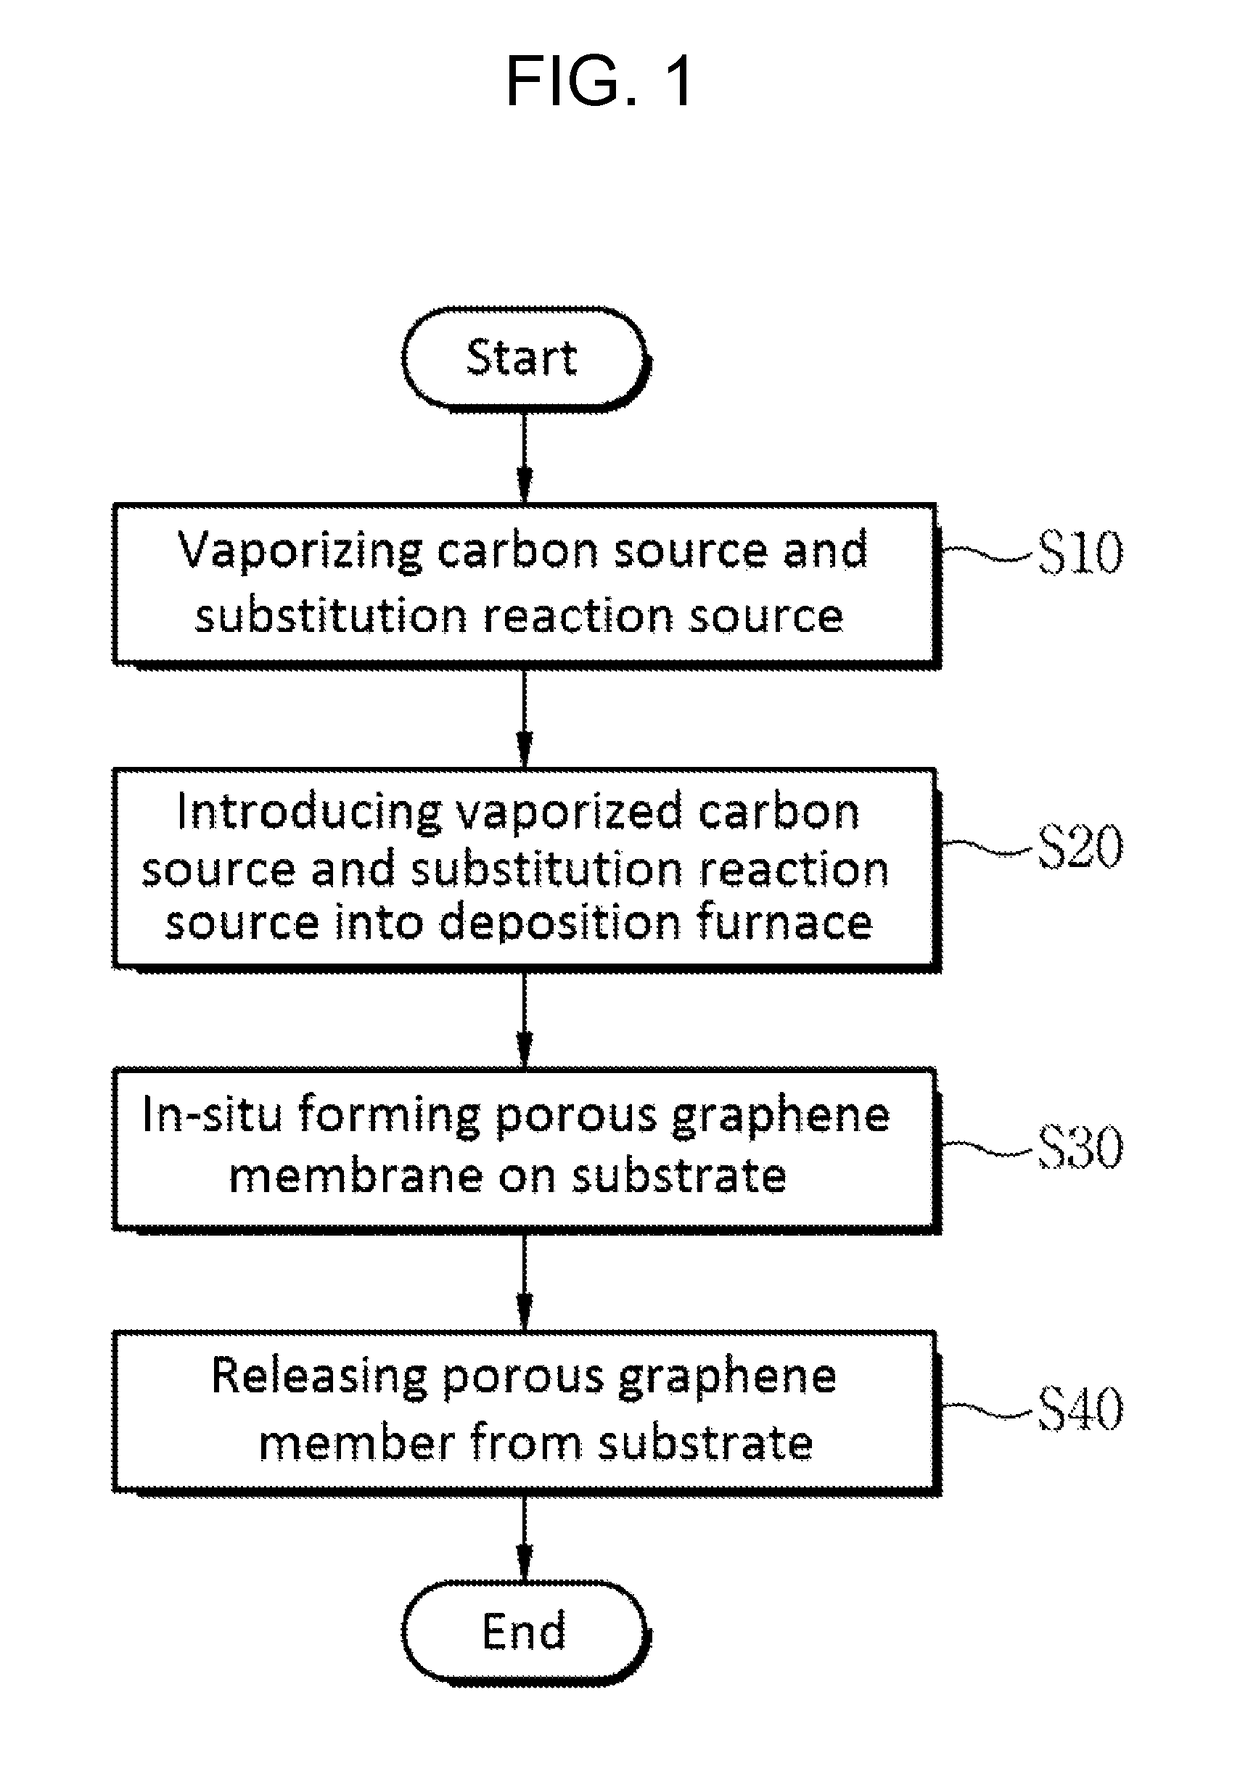 Porous graphene member, method for manufacturing same, and apparatus for manufacturing same using the method